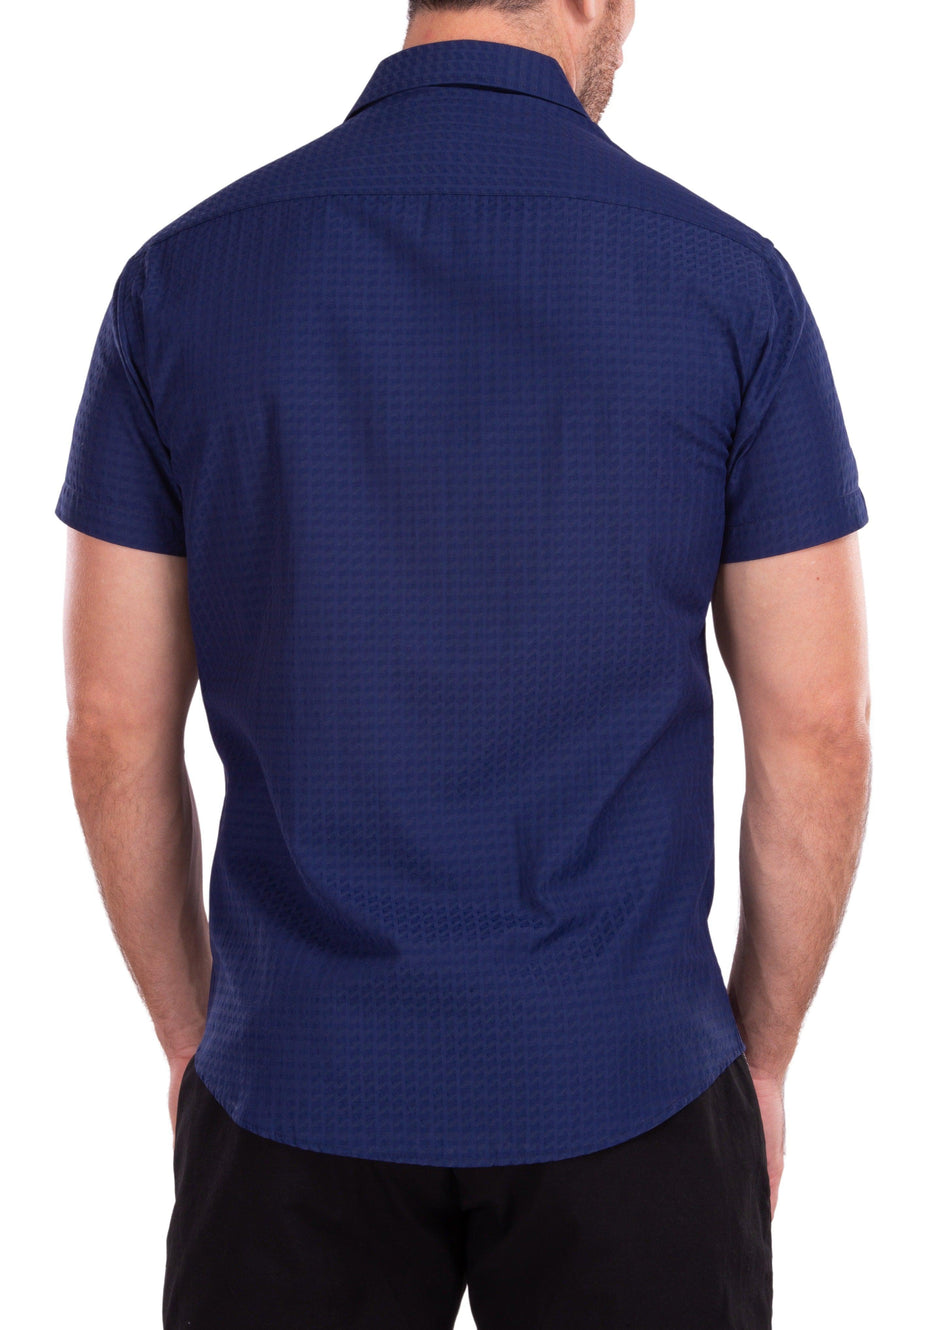 Geometric Texture Solid Navy Button Up Short Sleeve Dress Shirt